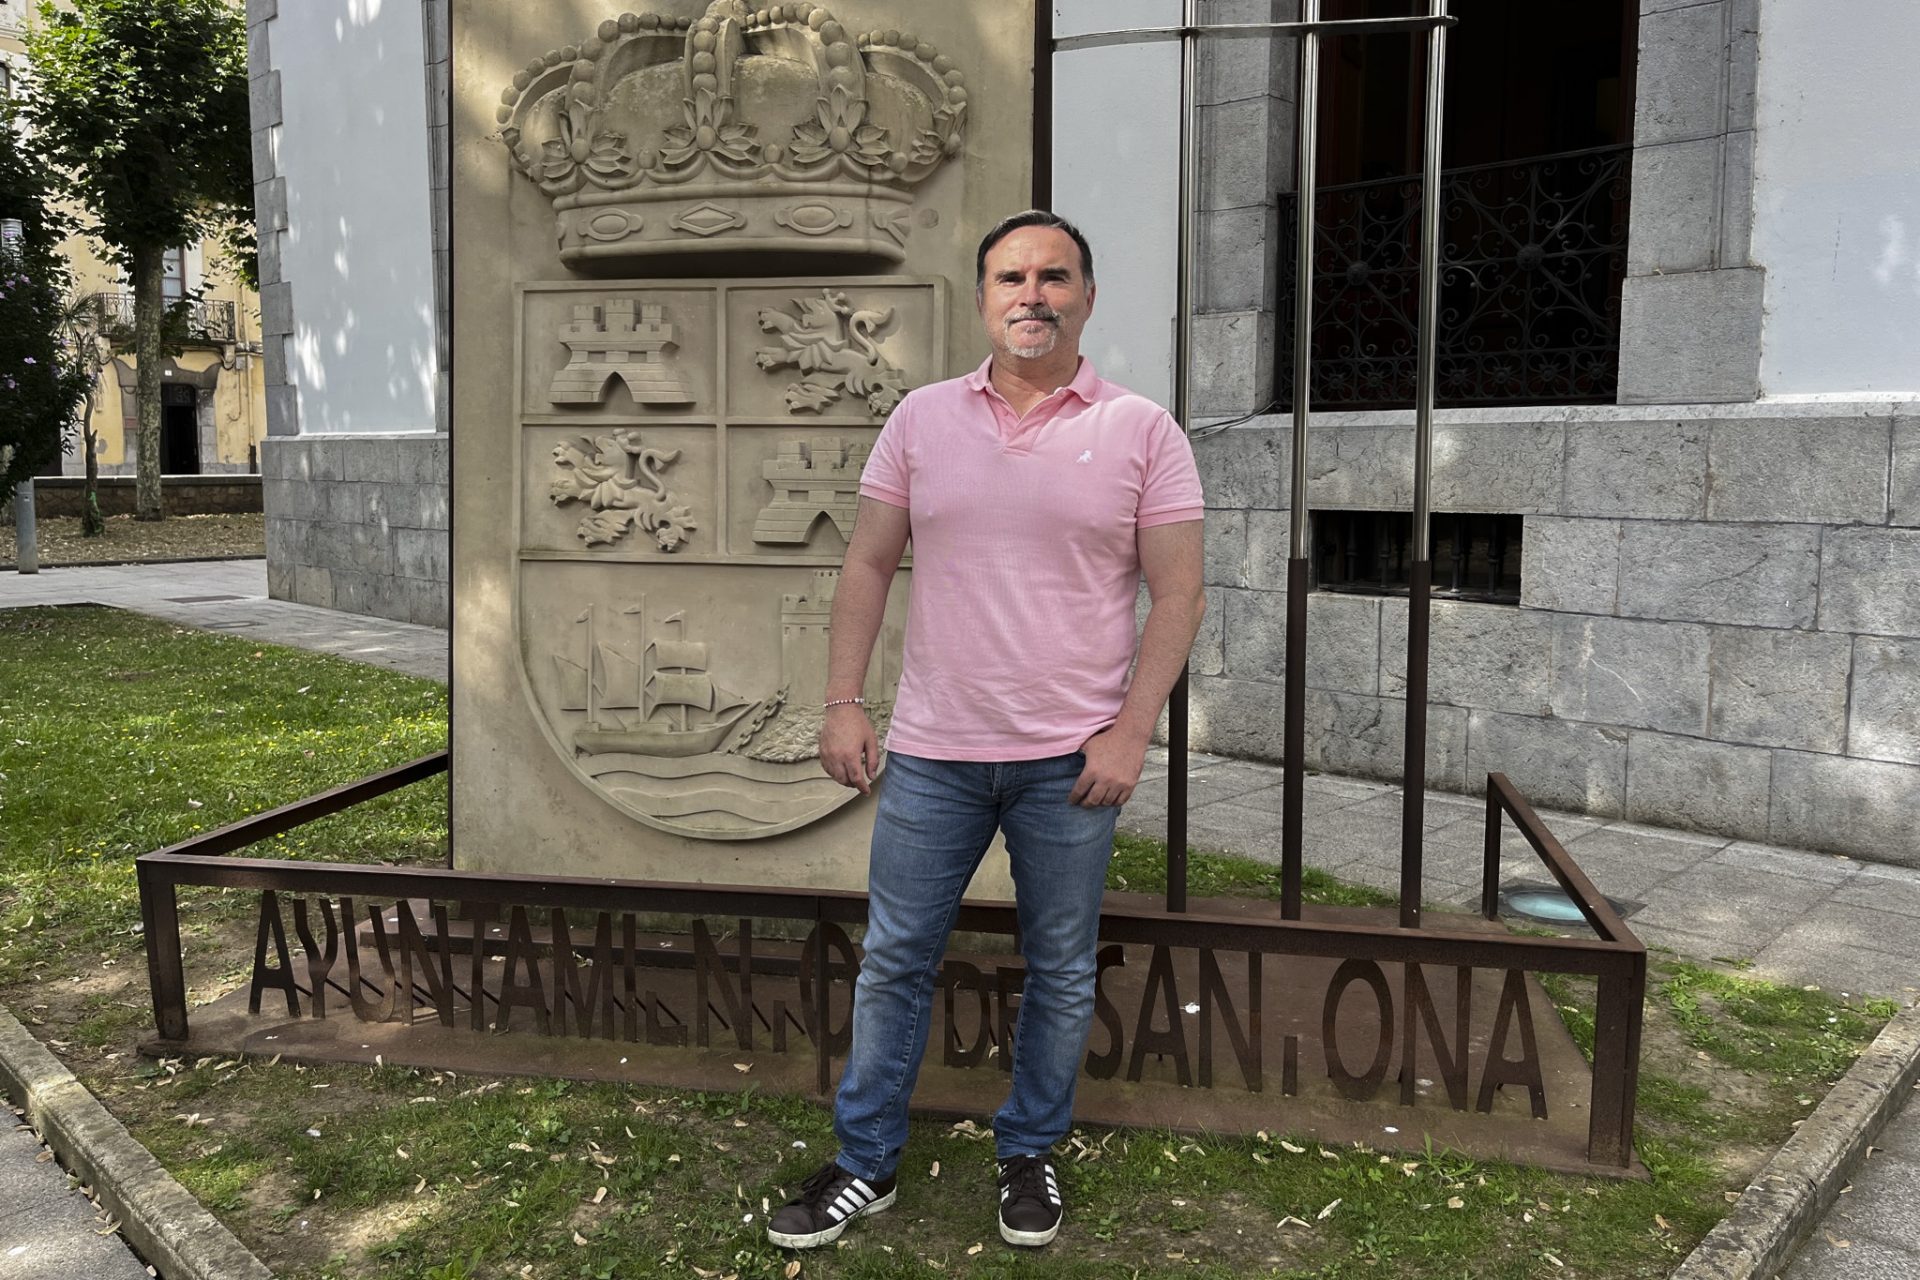 El nuevo alcalde de Santoña, Jesús Gullart, junto a la sede del Ayuntamiento. EFE/ Miguel Ramos.